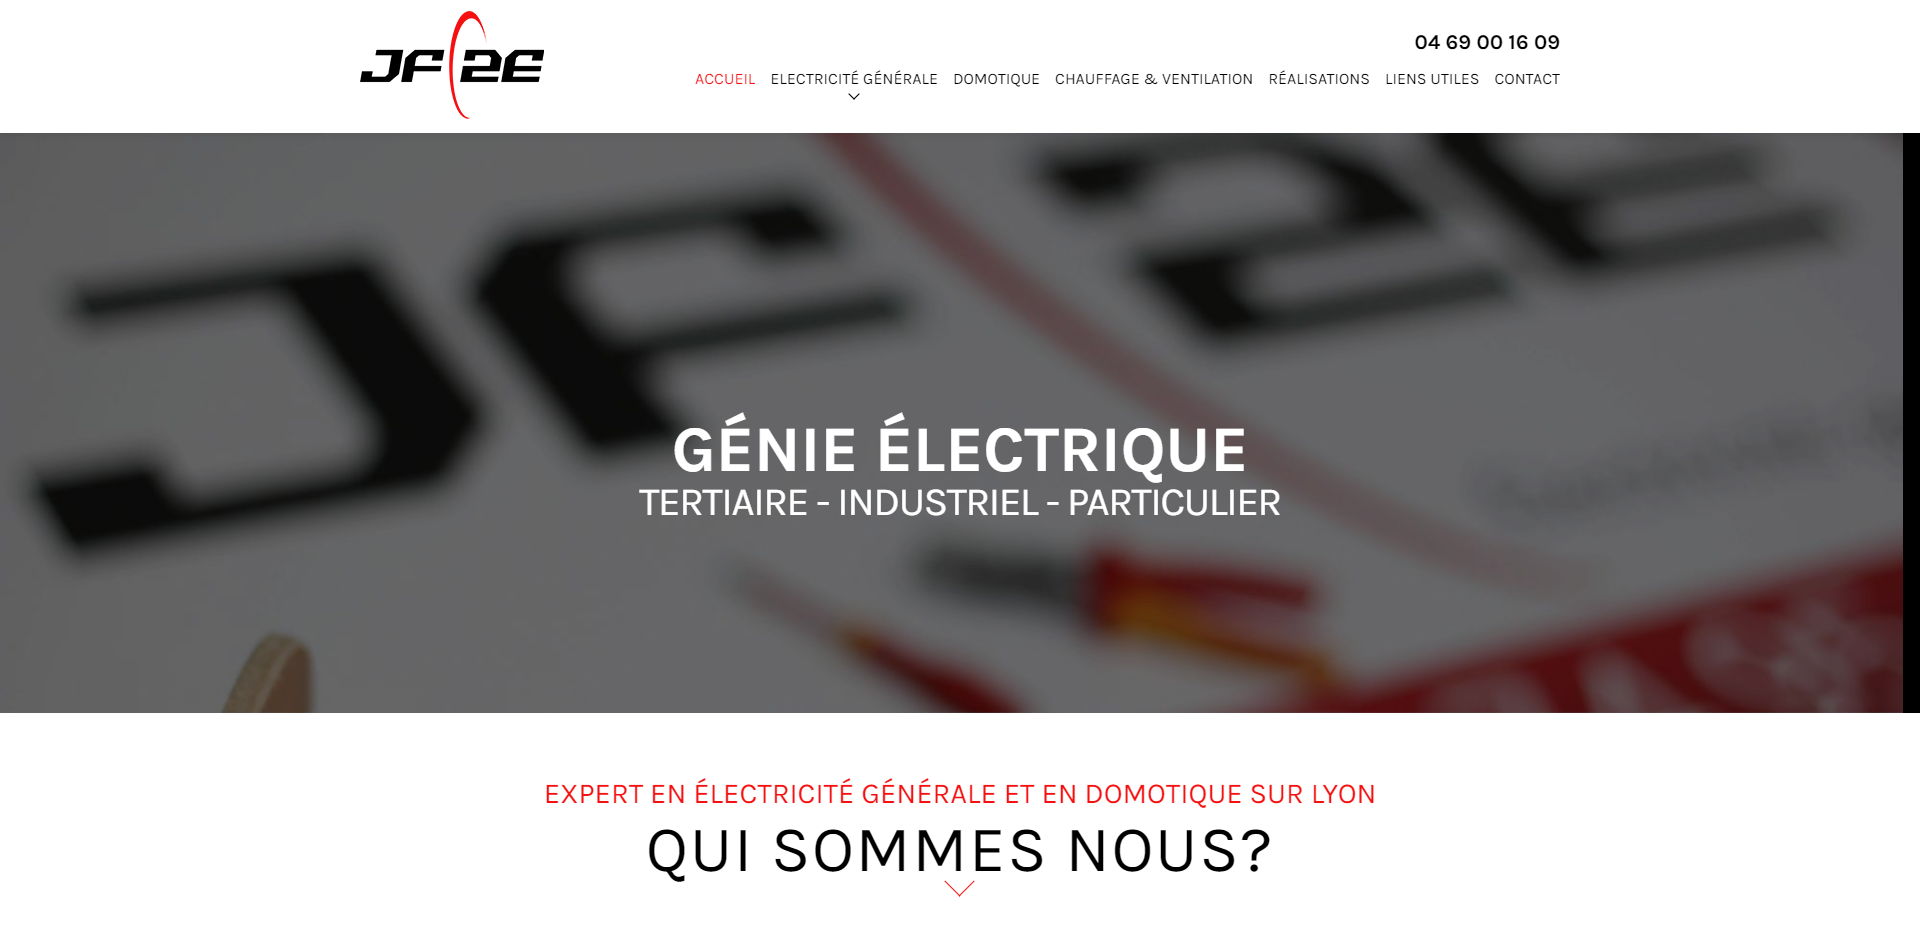 Où trouver un ingénieur électrique pour faire un bilan de puissance chez les professionnels sur Lyon ? 